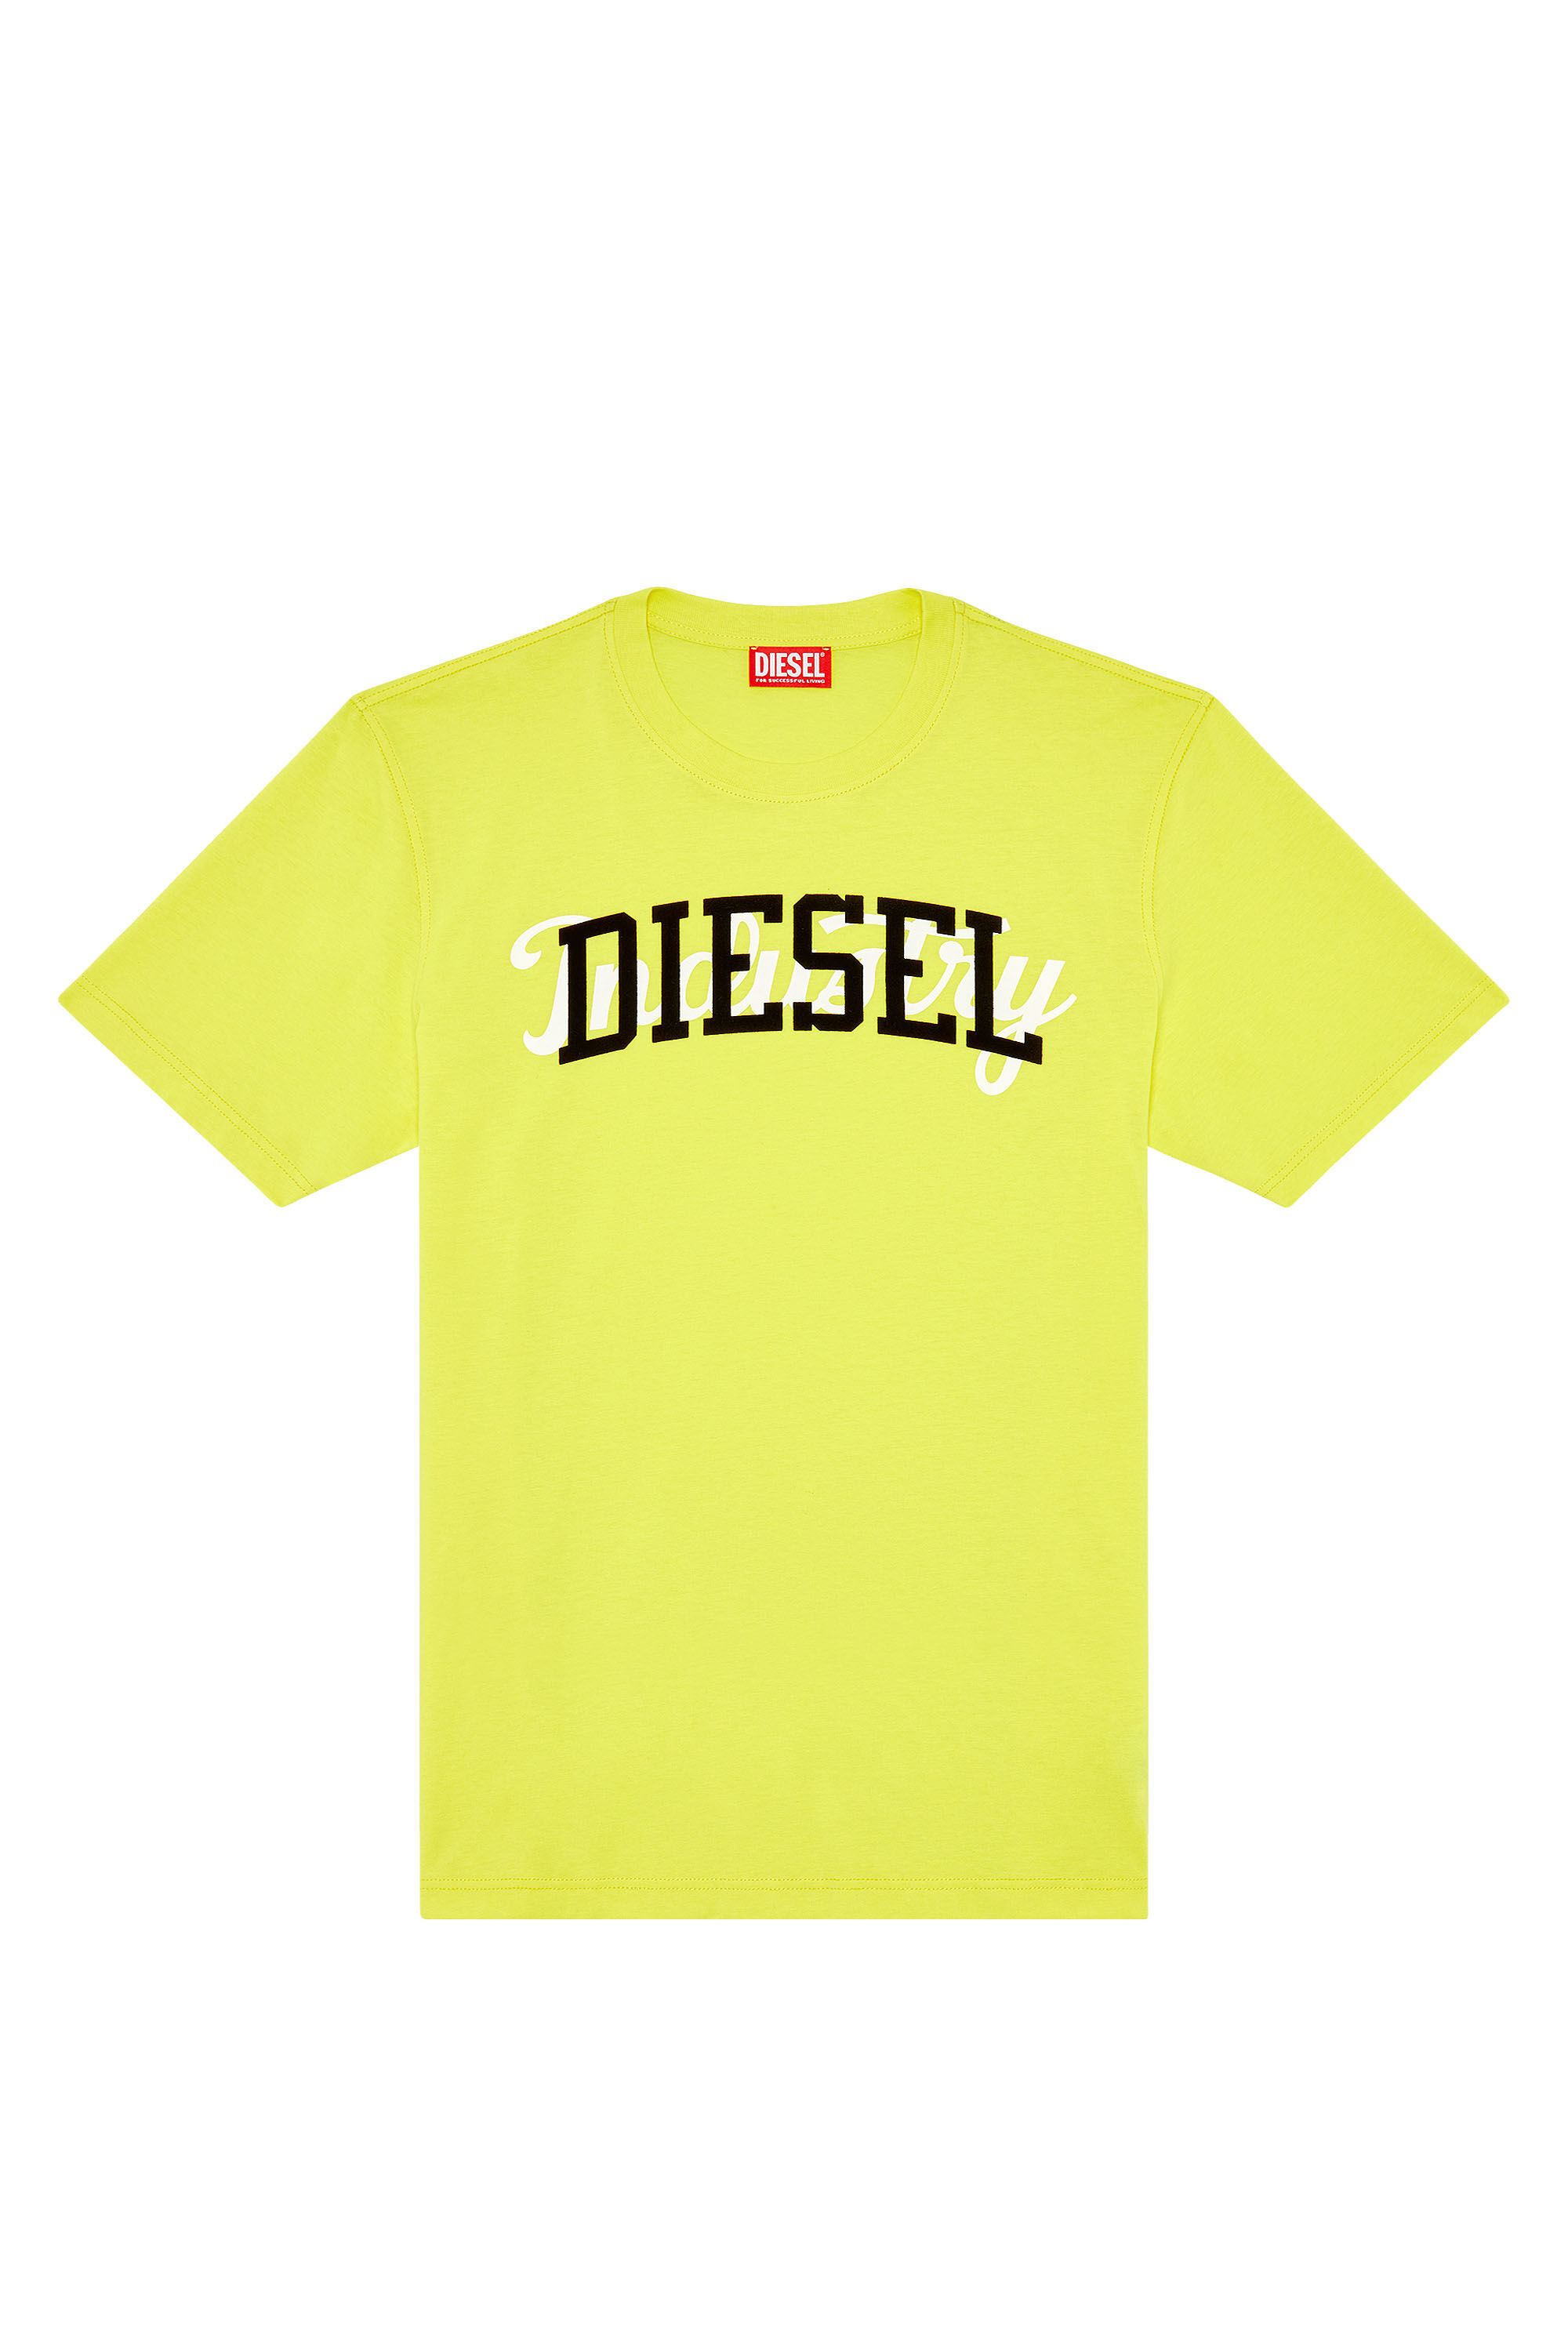 Diesel - T-JUST-N10, Giallo - Image 2